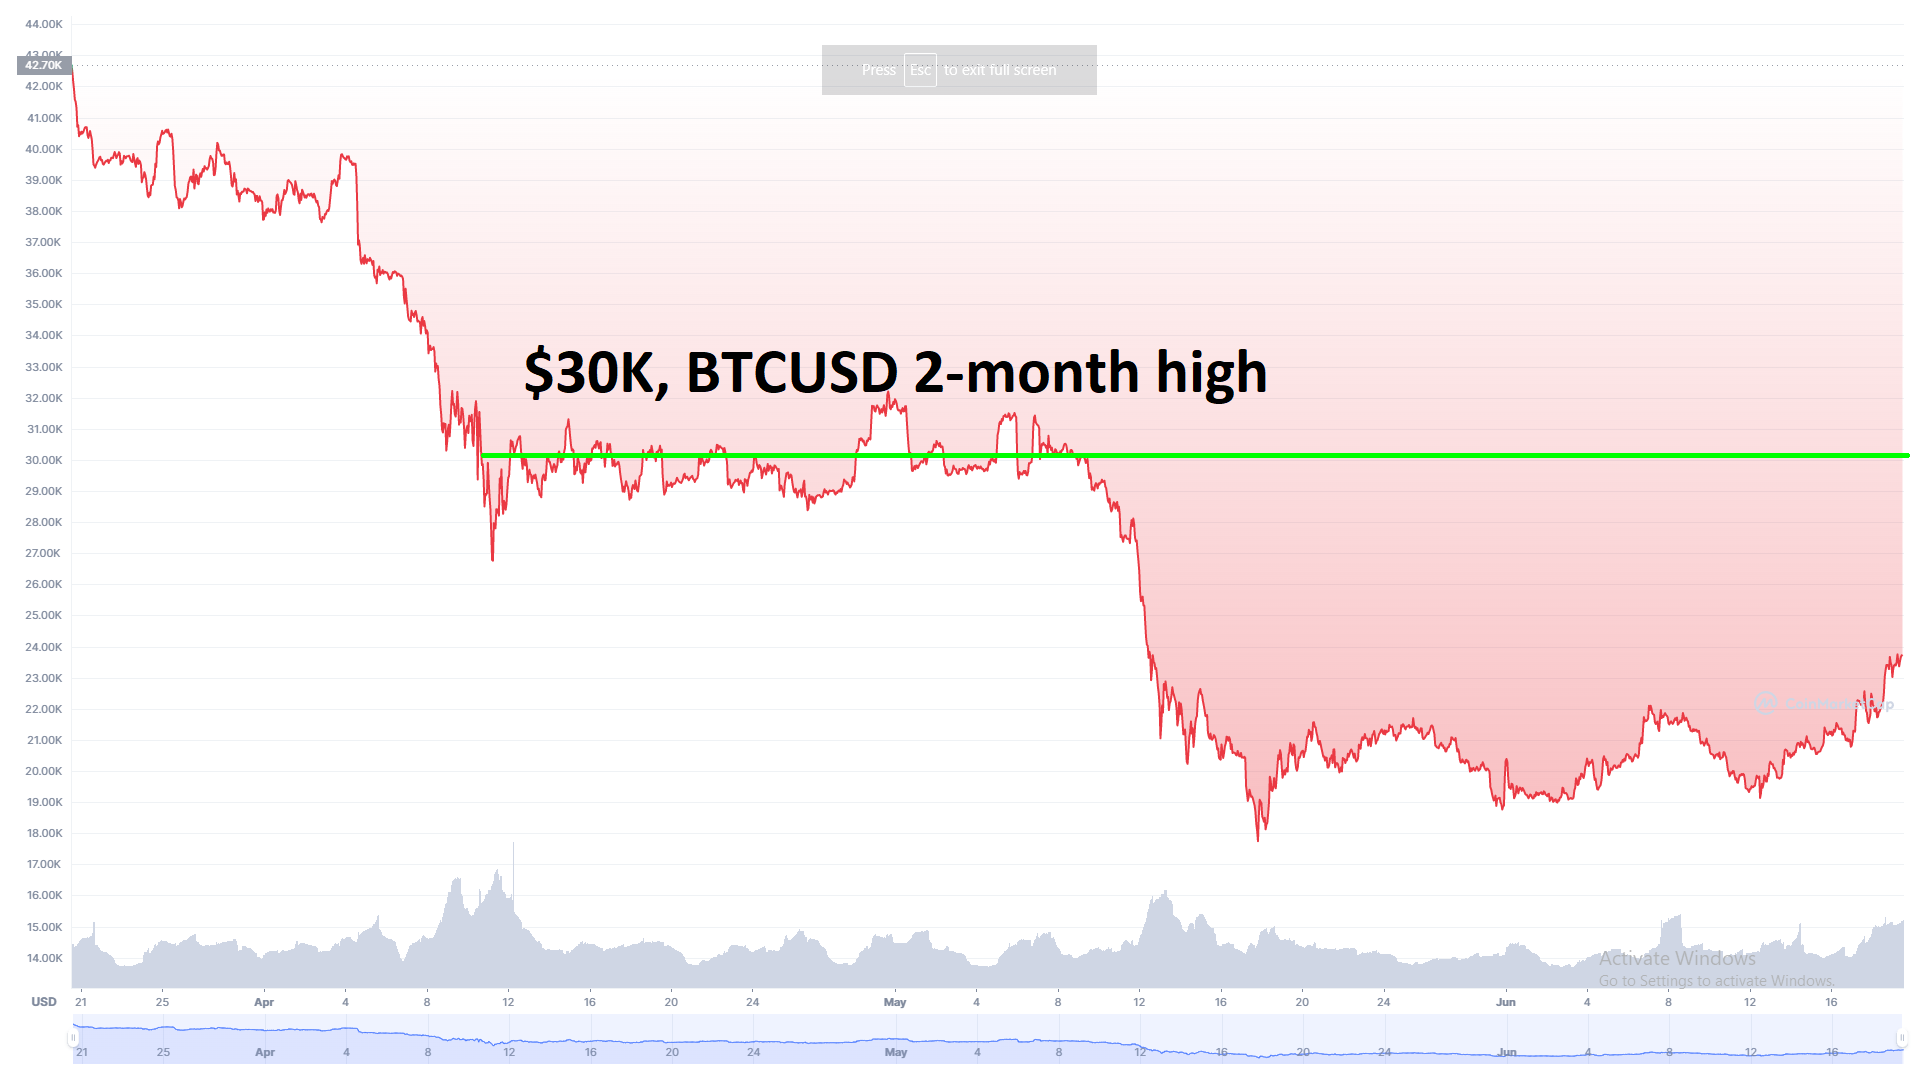 Bitcoin price 2-month high coinmarketcap